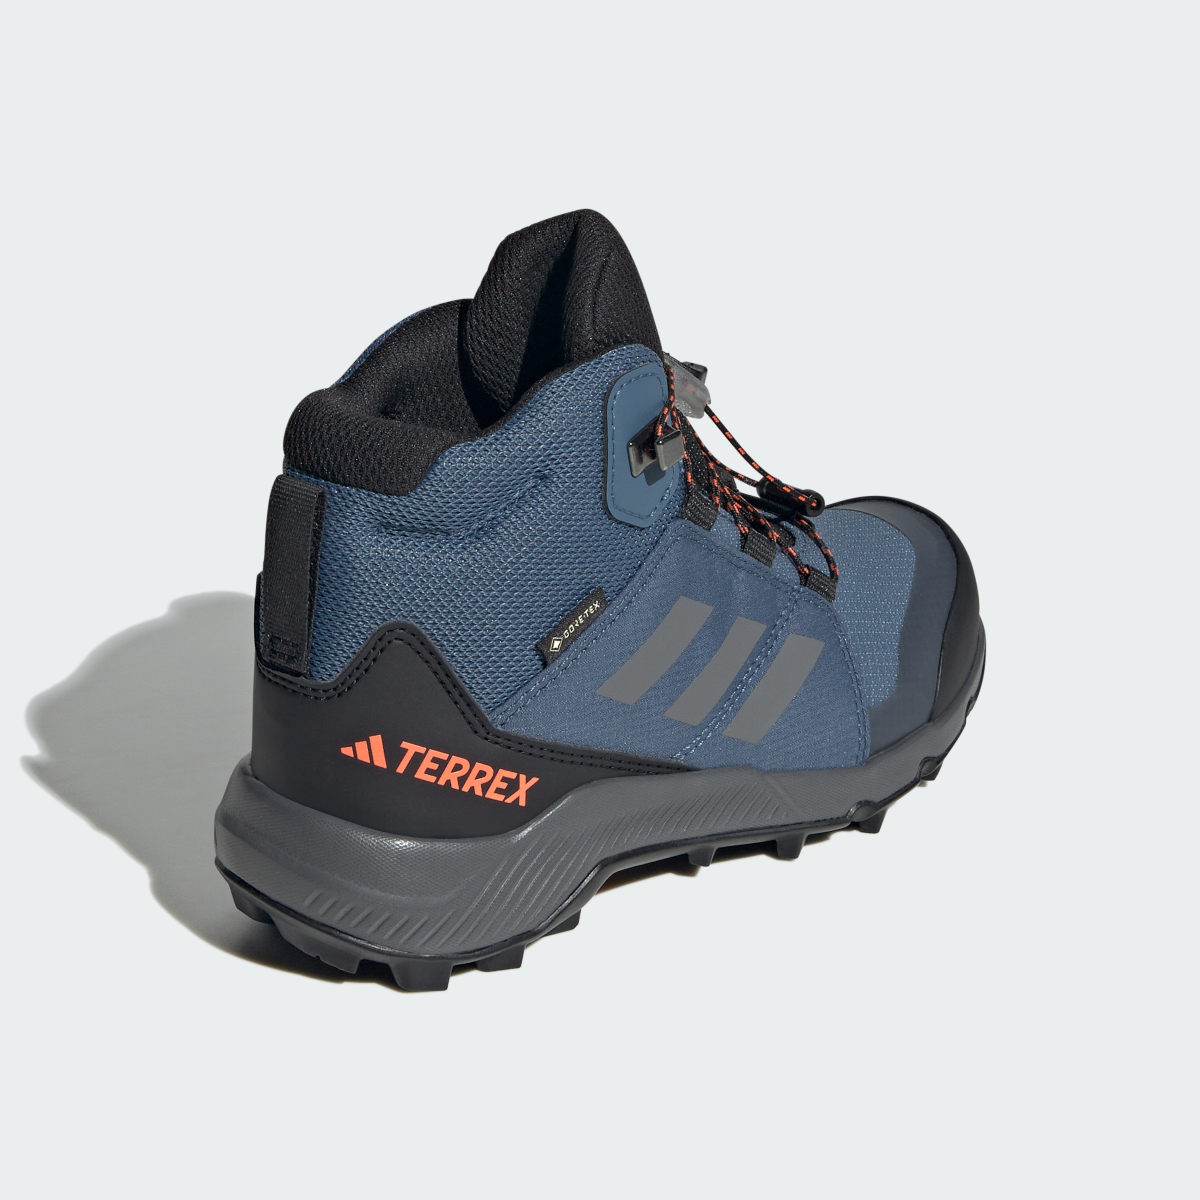 Adidas Sapatilhas de Caminhada GORE-TEX Organiser Mid. 7